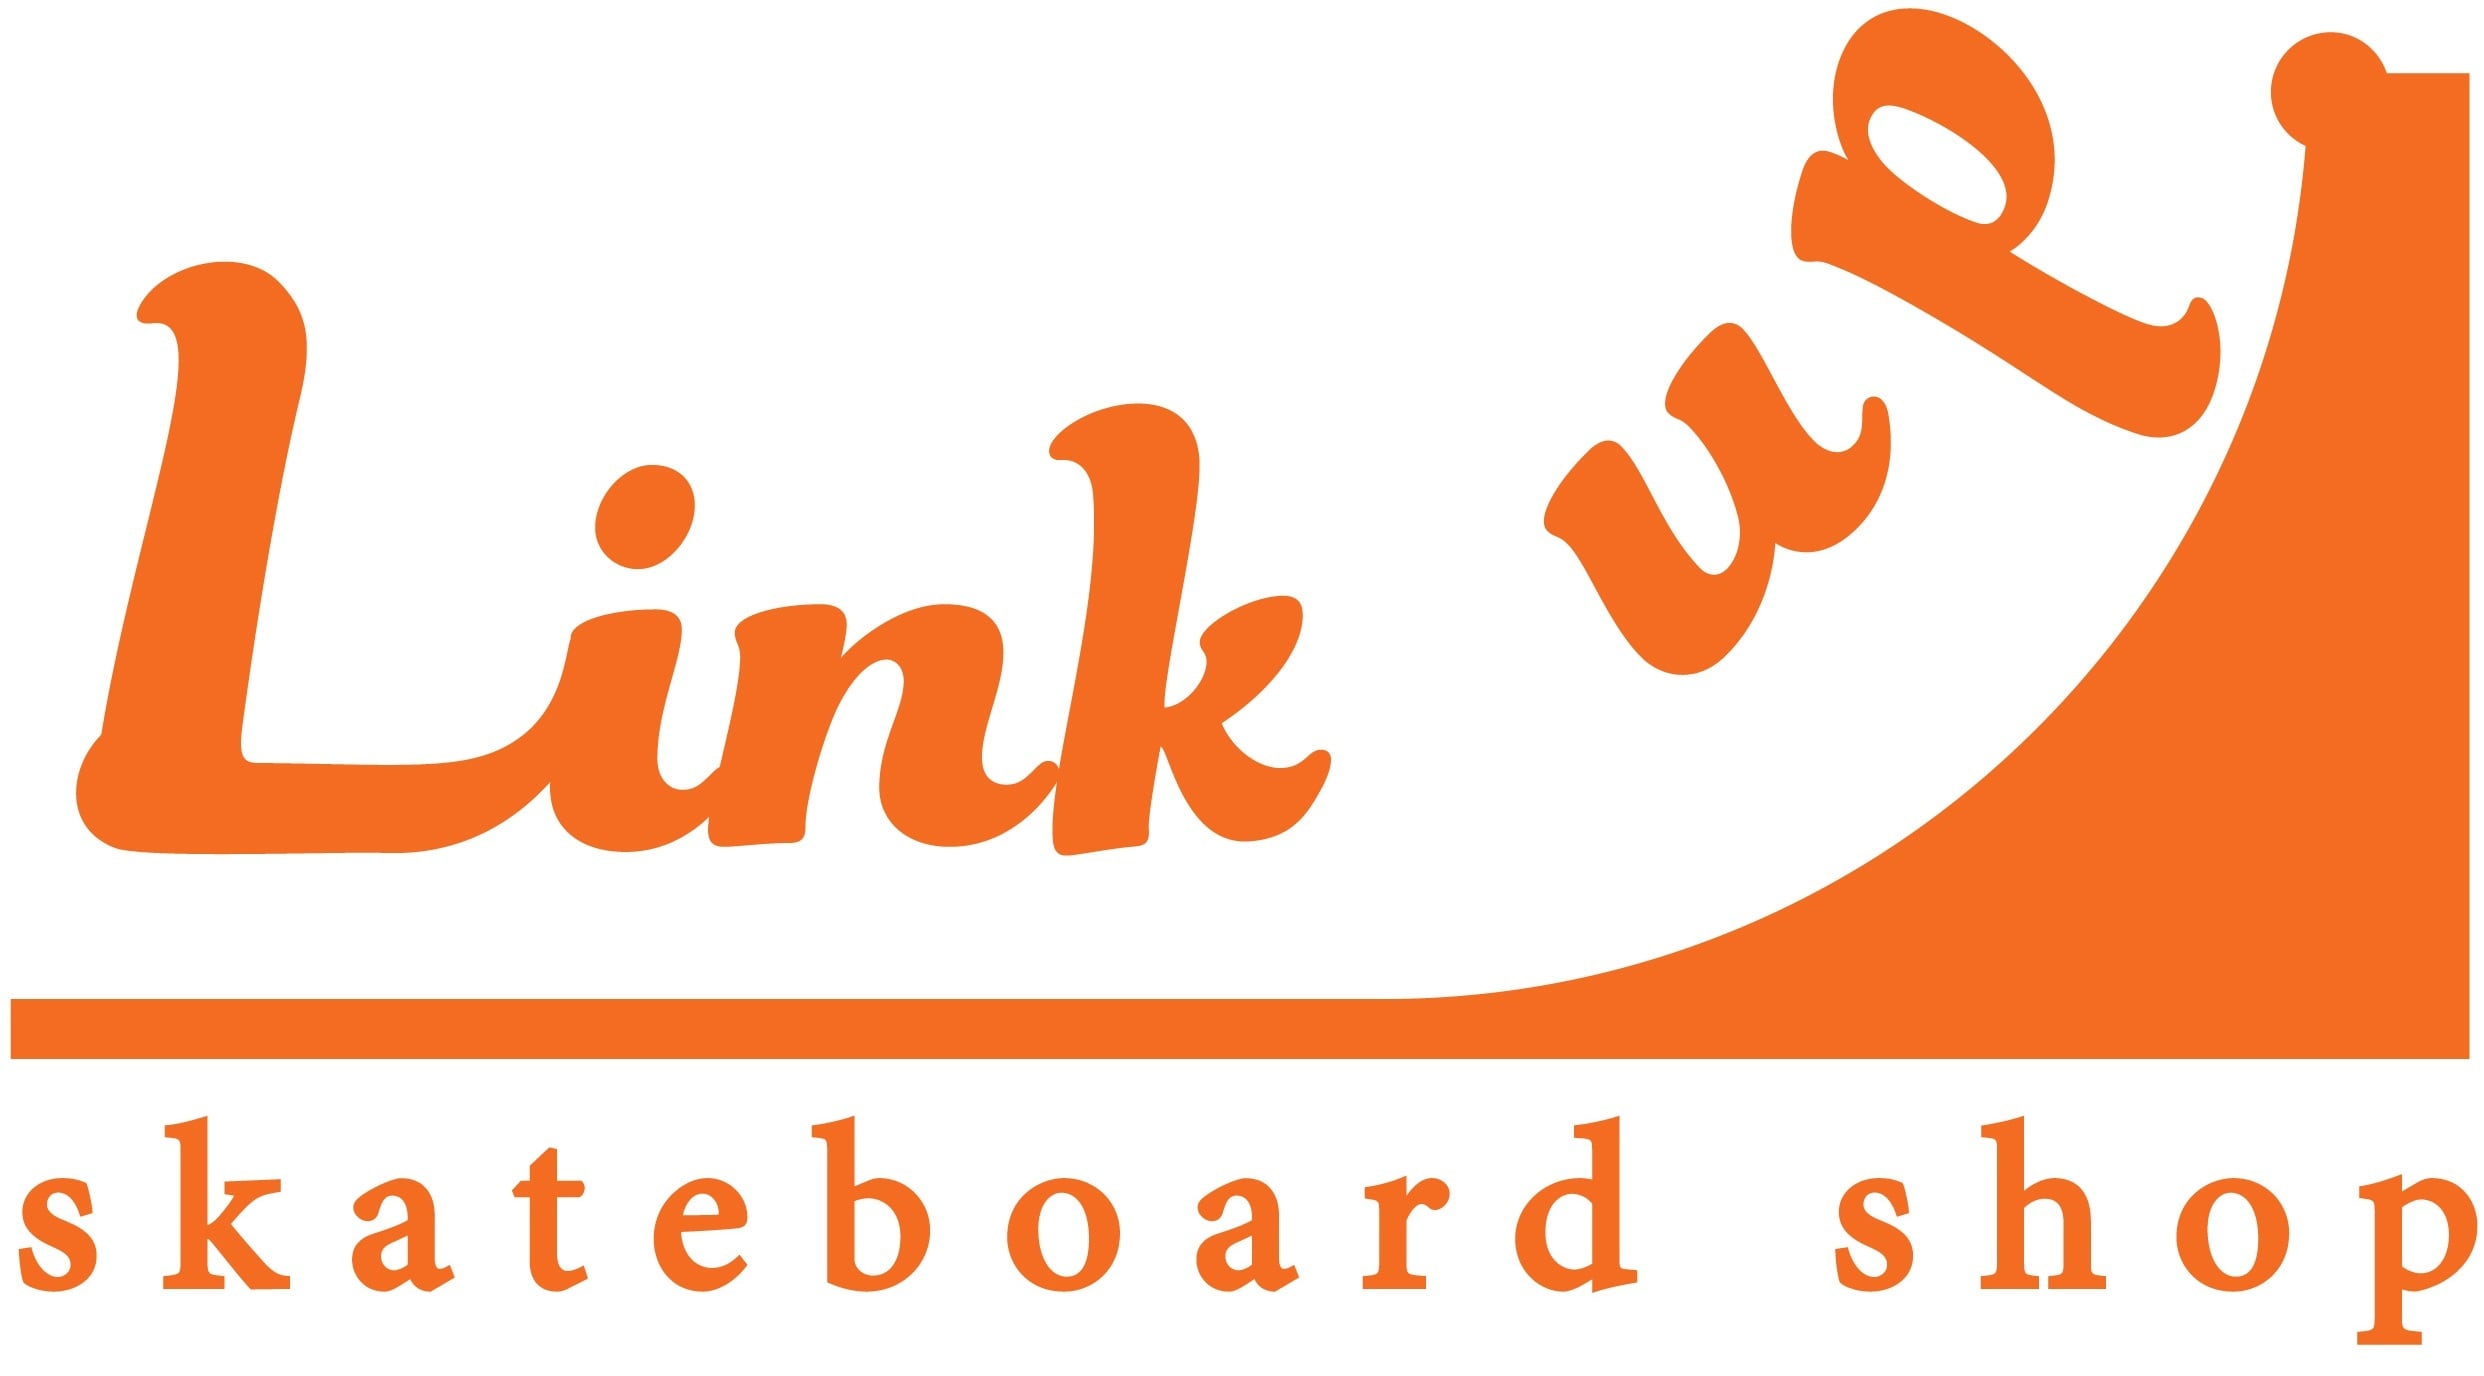 Link up Skateboard shop